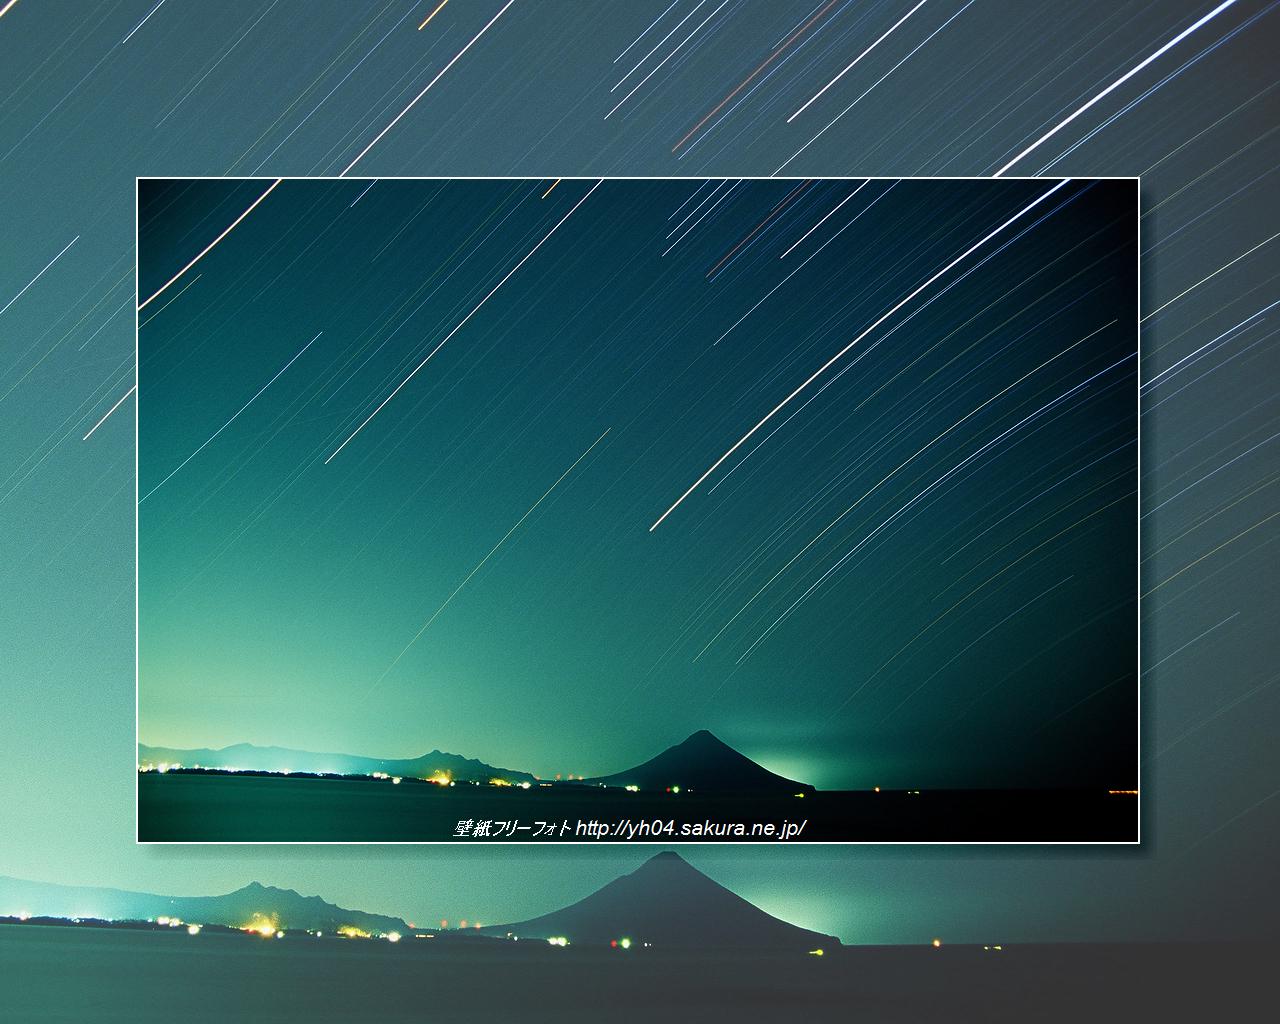 開聞岳と星の光跡をリバーサルフィルムで撮影した画像をモチーフしました 「高画質＋高解像度(1280×1024)」デスクトップ無料壁紙」